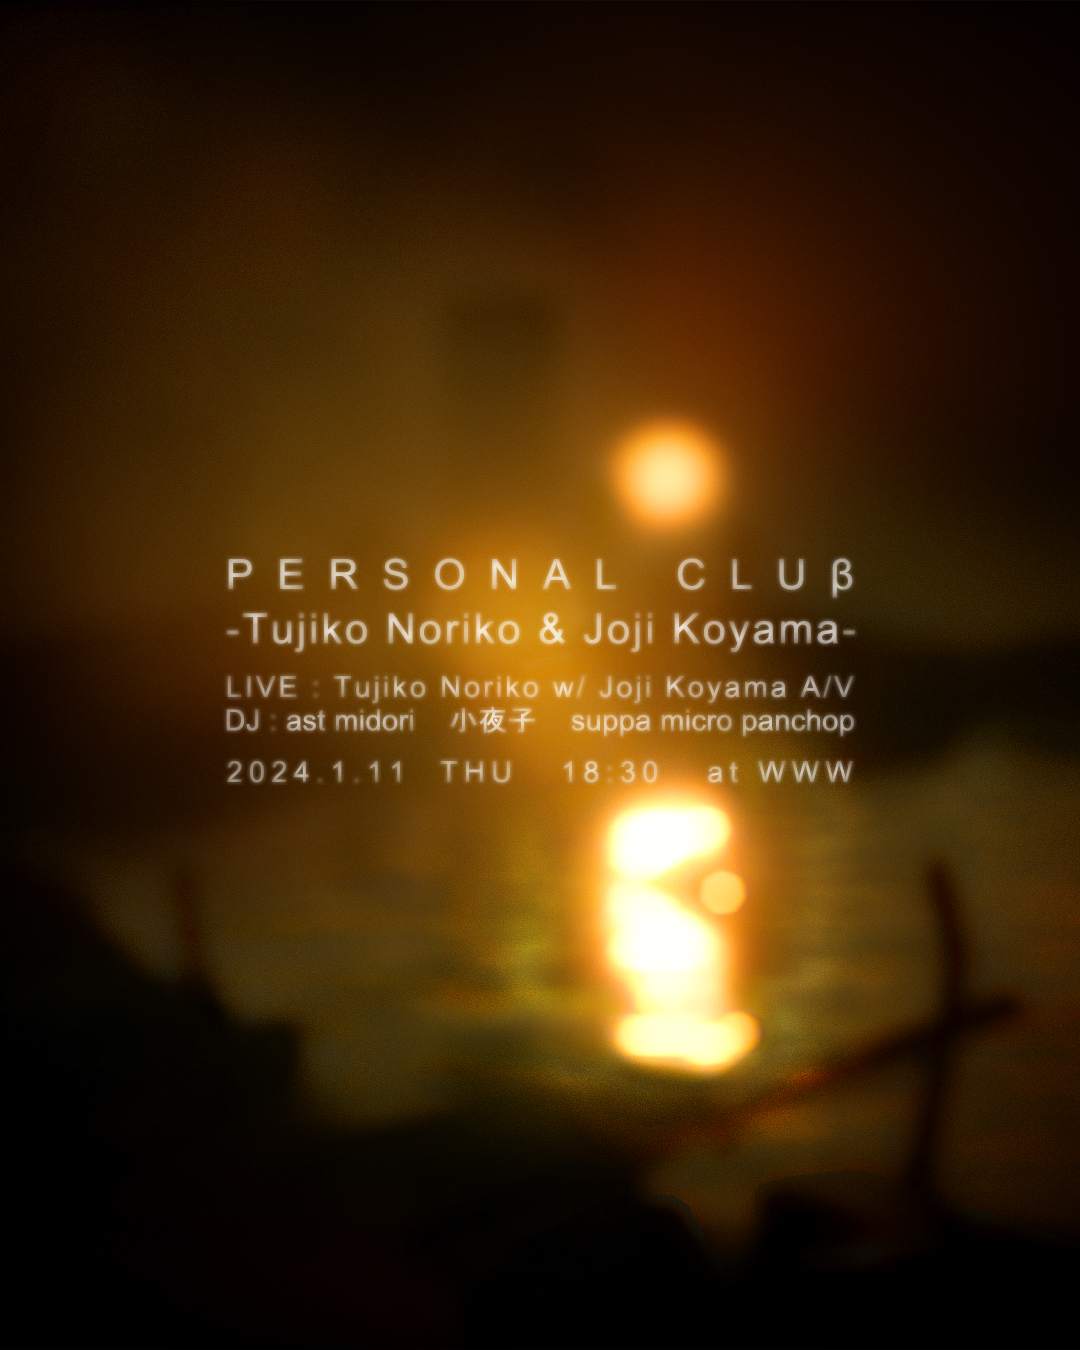 PERSONAL CLUβ -Tujiko Noriko & Joji Koyama- - フライヤー表